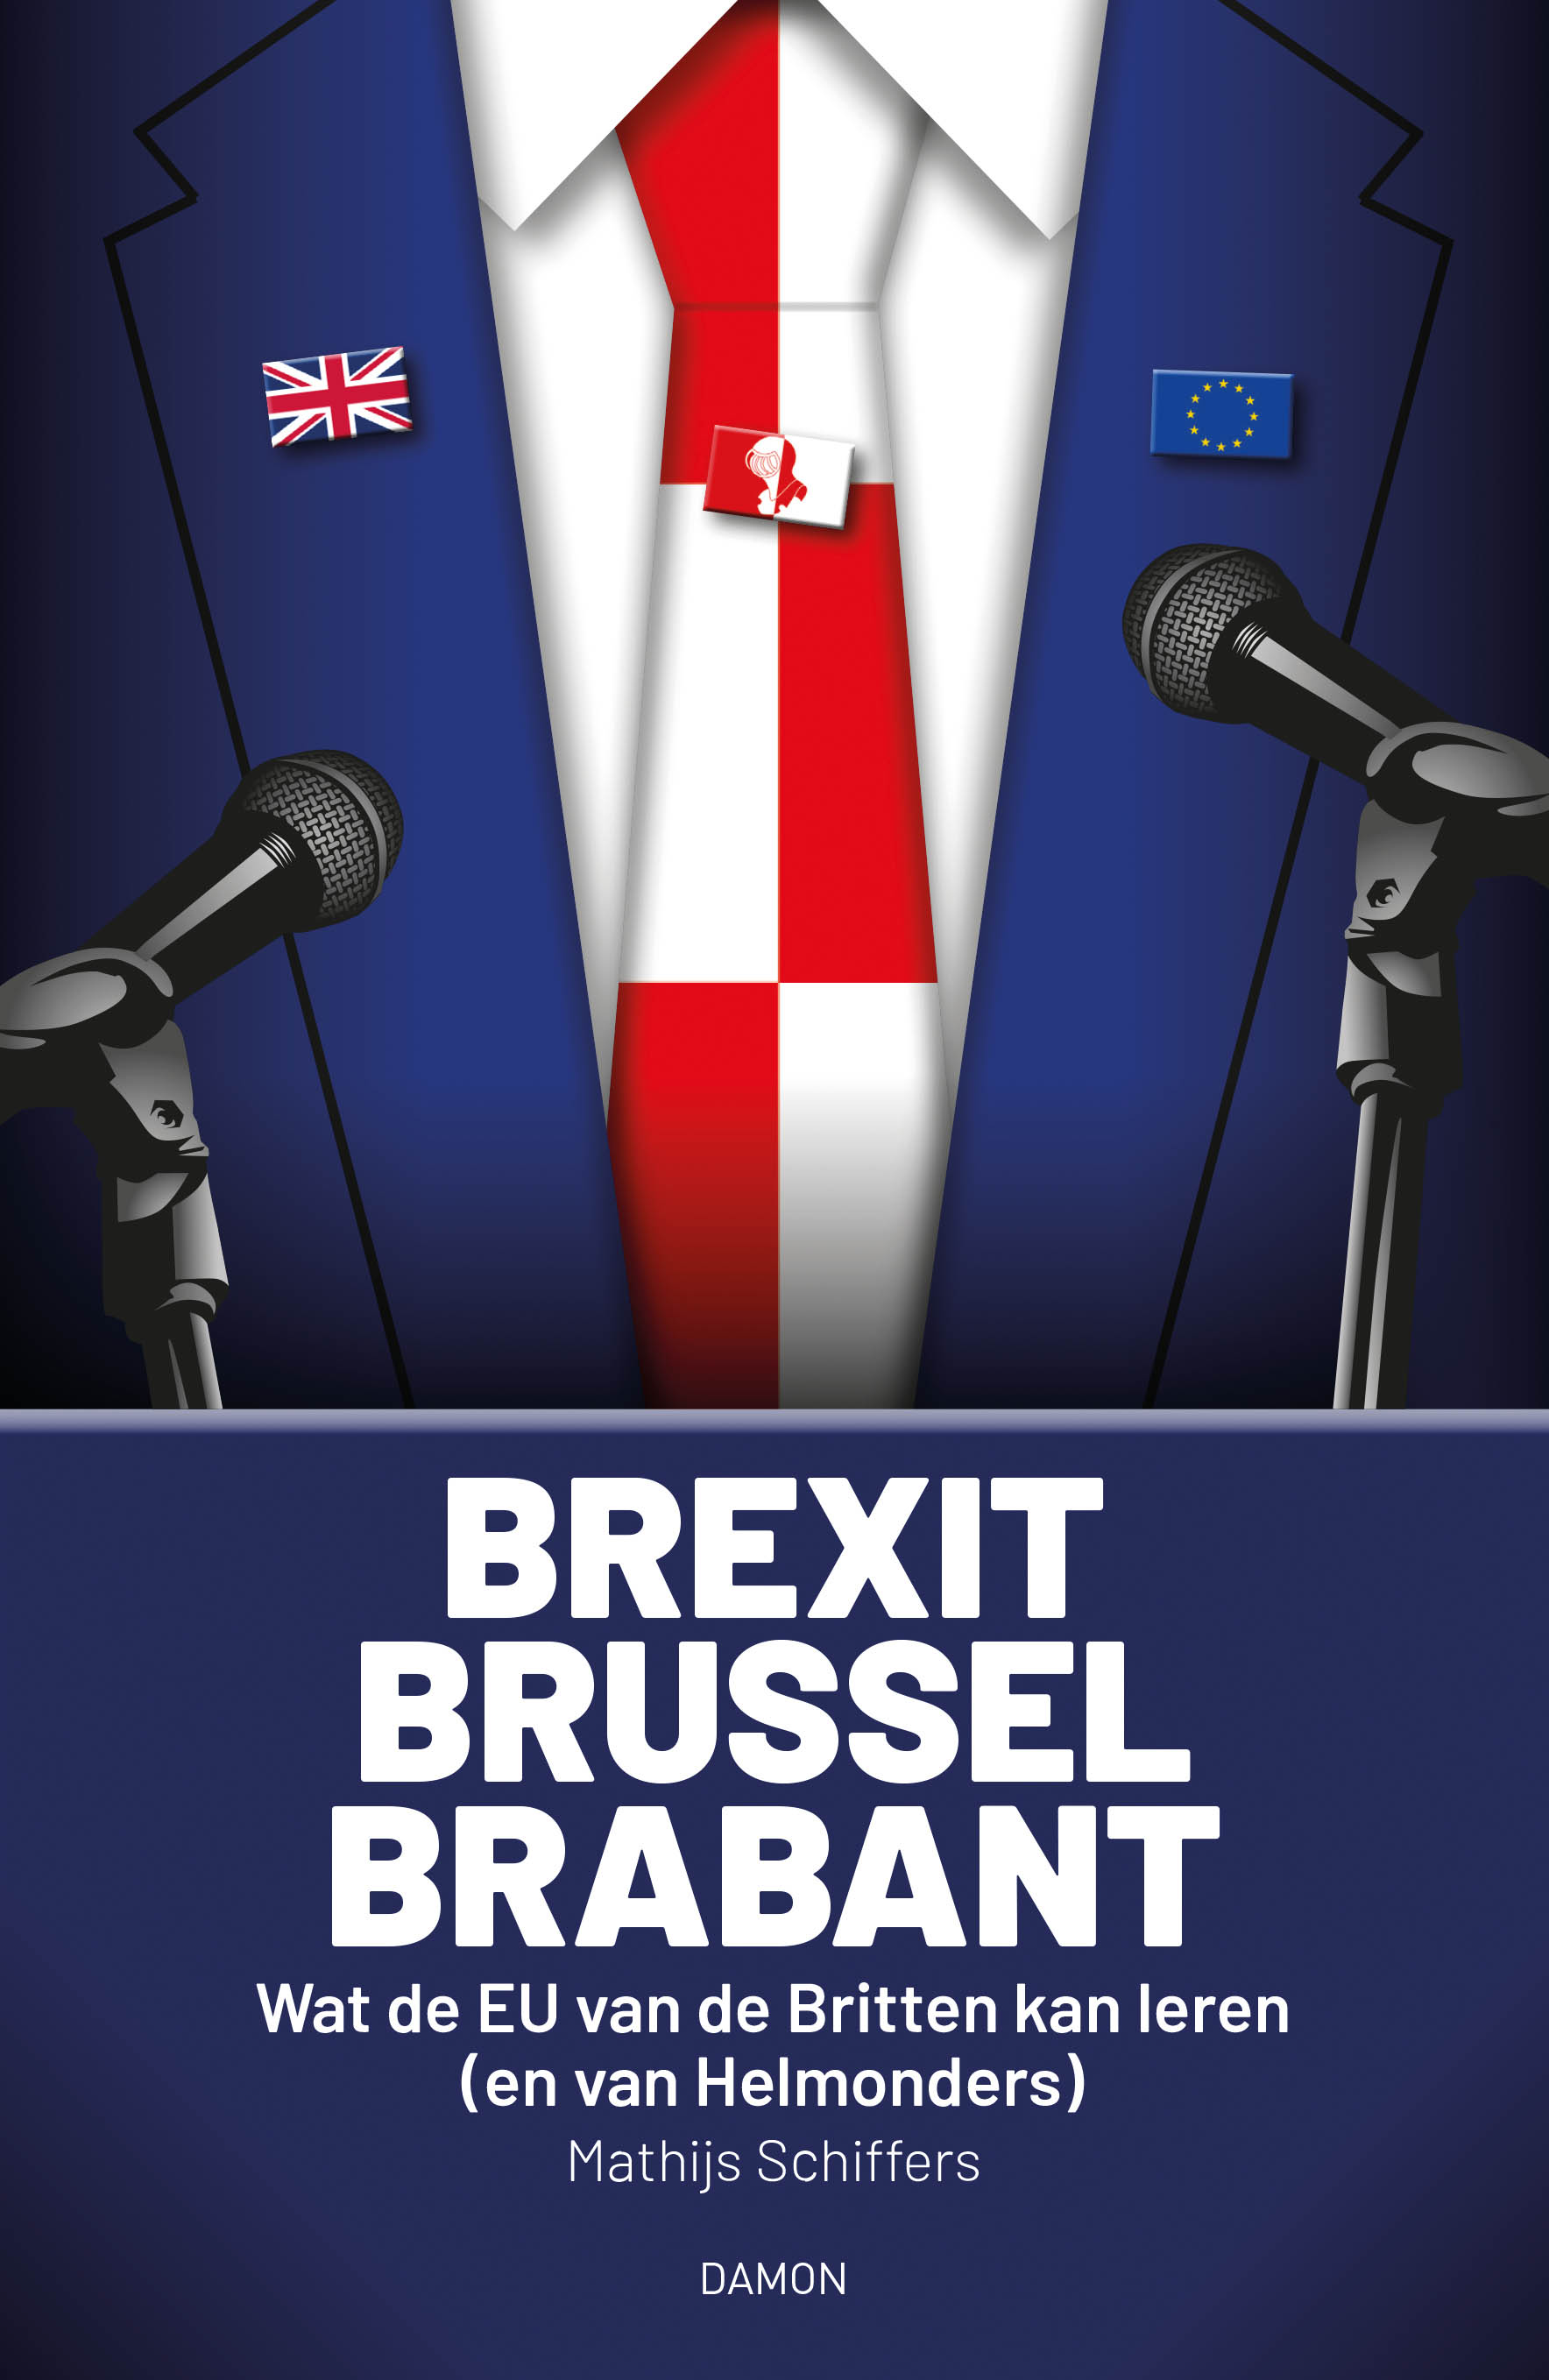 Brexit, Brussel, Brabant. Wat de EU van de Britten kan leren (en van Helmonders)